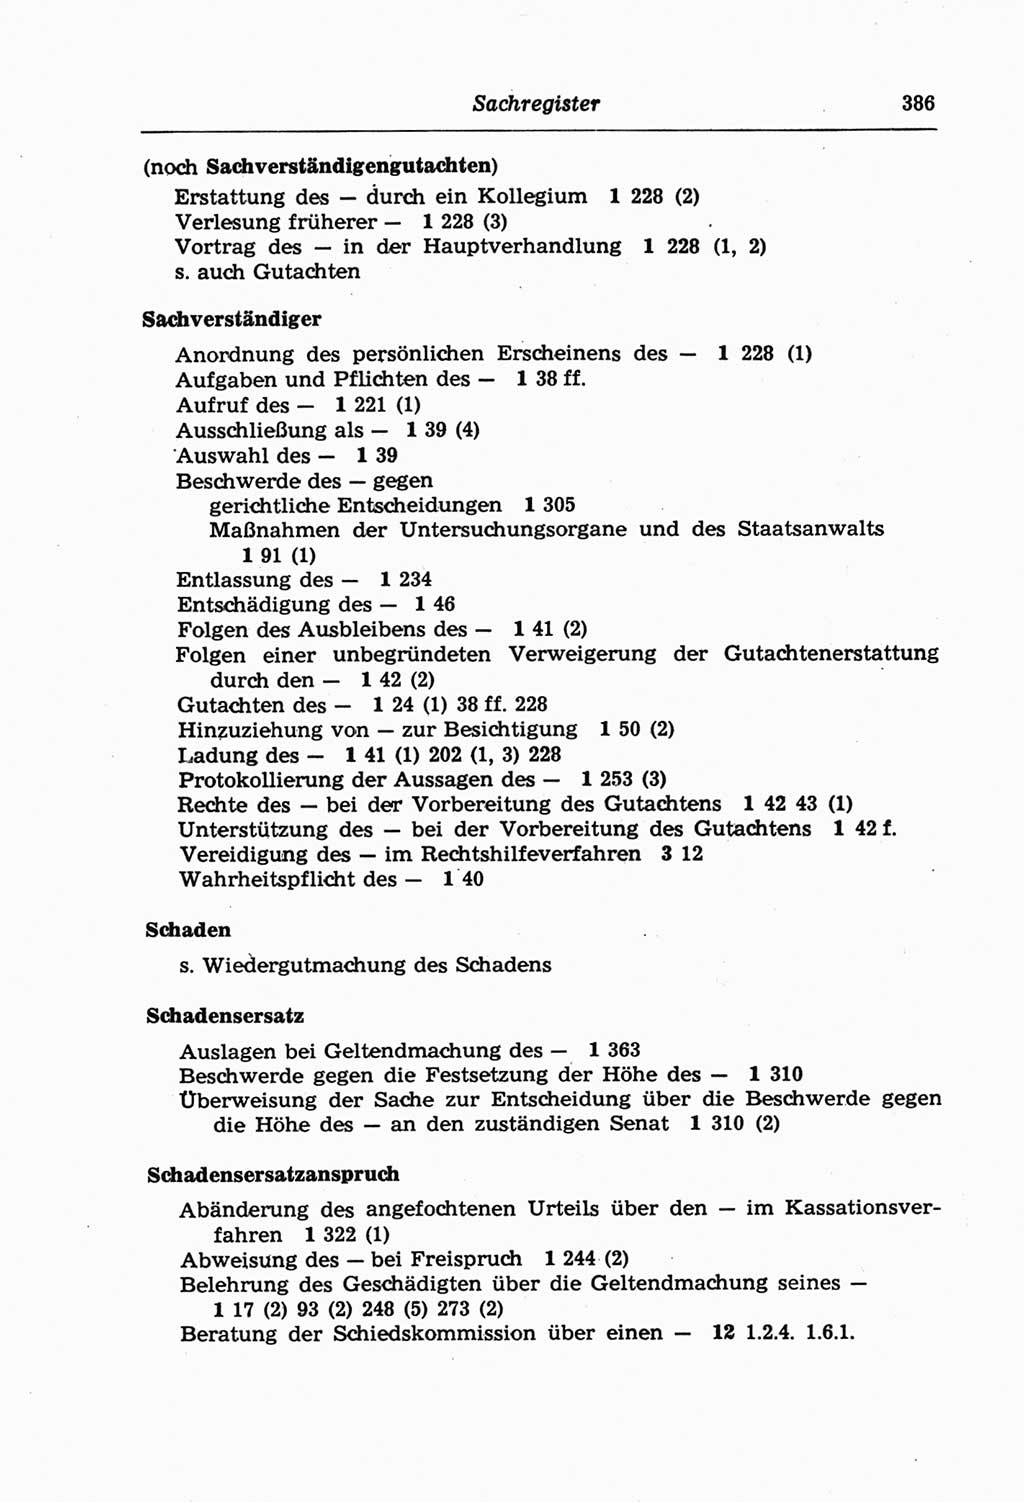 Strafprozeßordnung (StPO) der Deutschen Demokratischen Republik (DDR) und angrenzende Gesetze und Bestimmungen 1968, Seite 386 (StPO Ges. Bstgn. DDR 1968, S. 386)